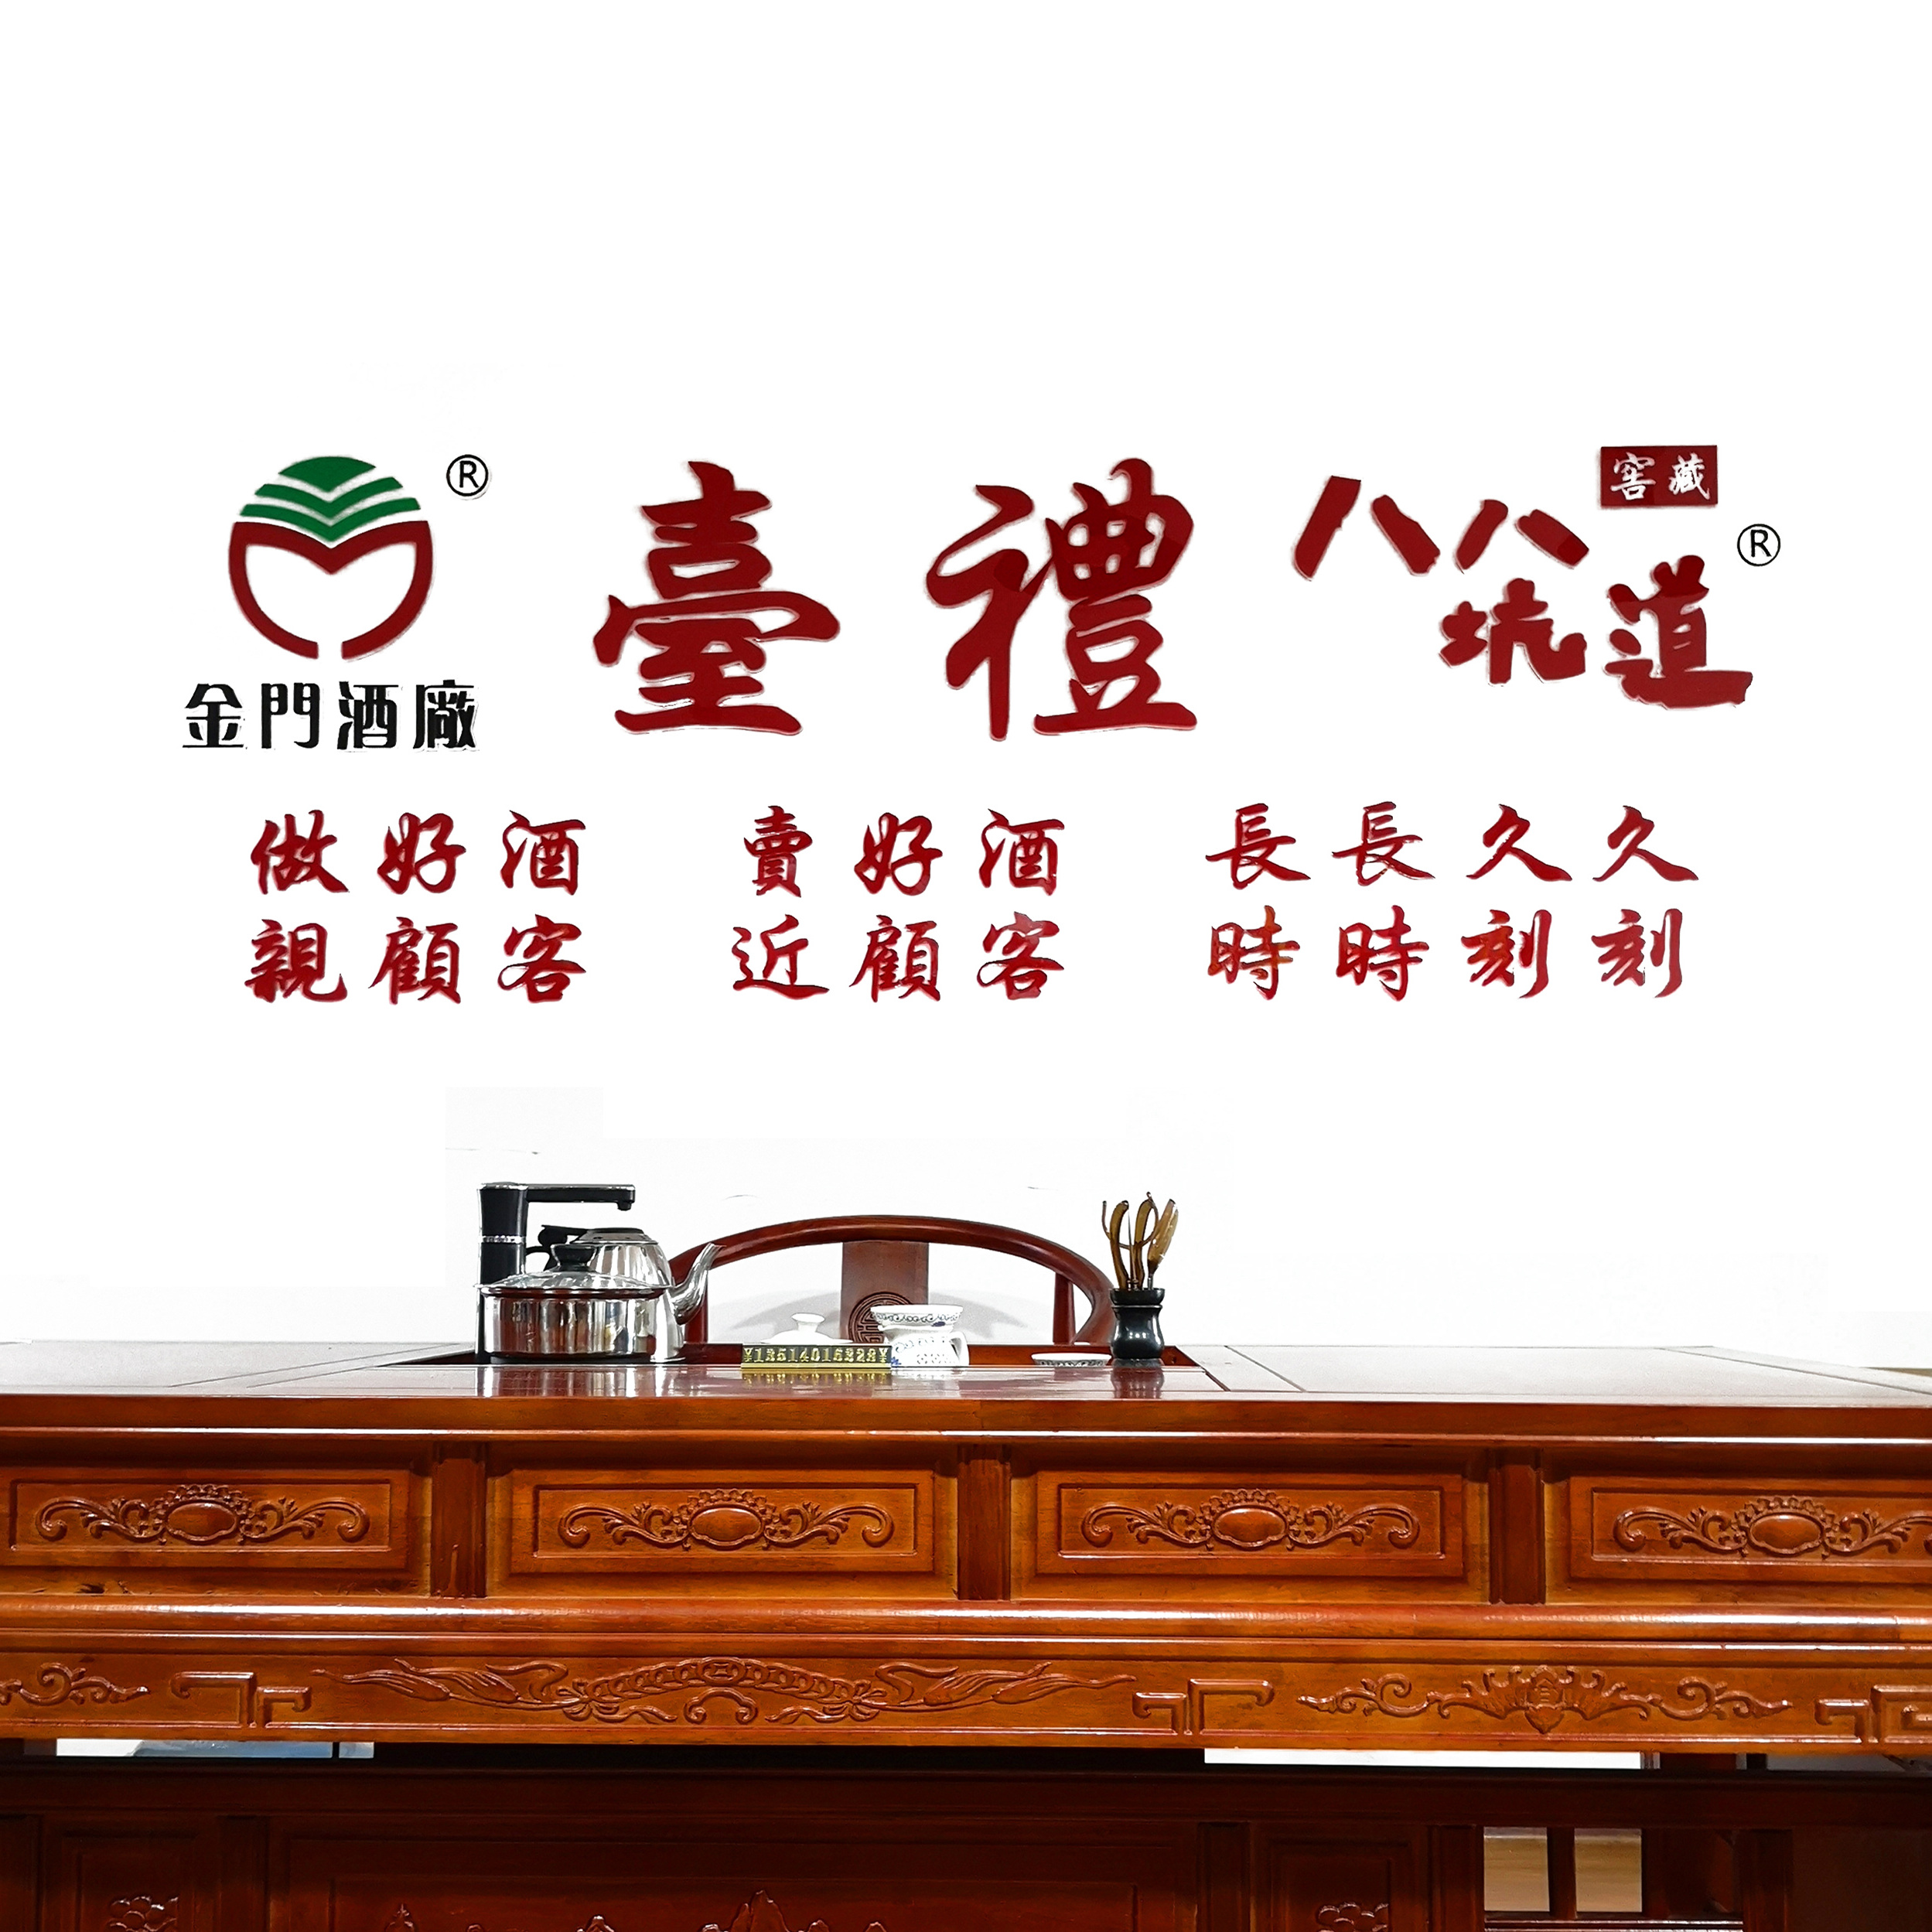 易馨——台湾高粱酒系列介绍 - 哔哩哔哩